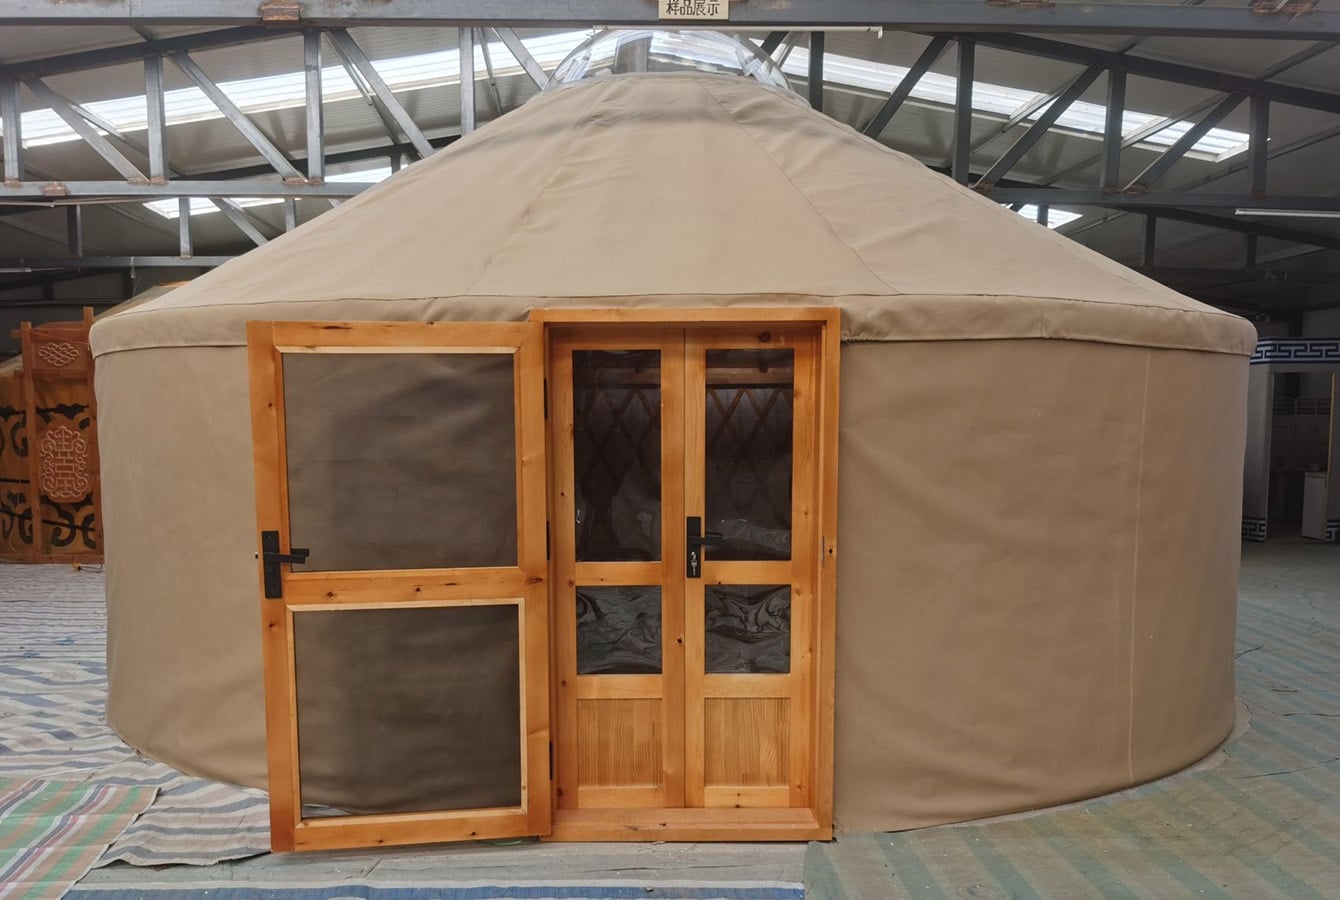 The Euro Yurt